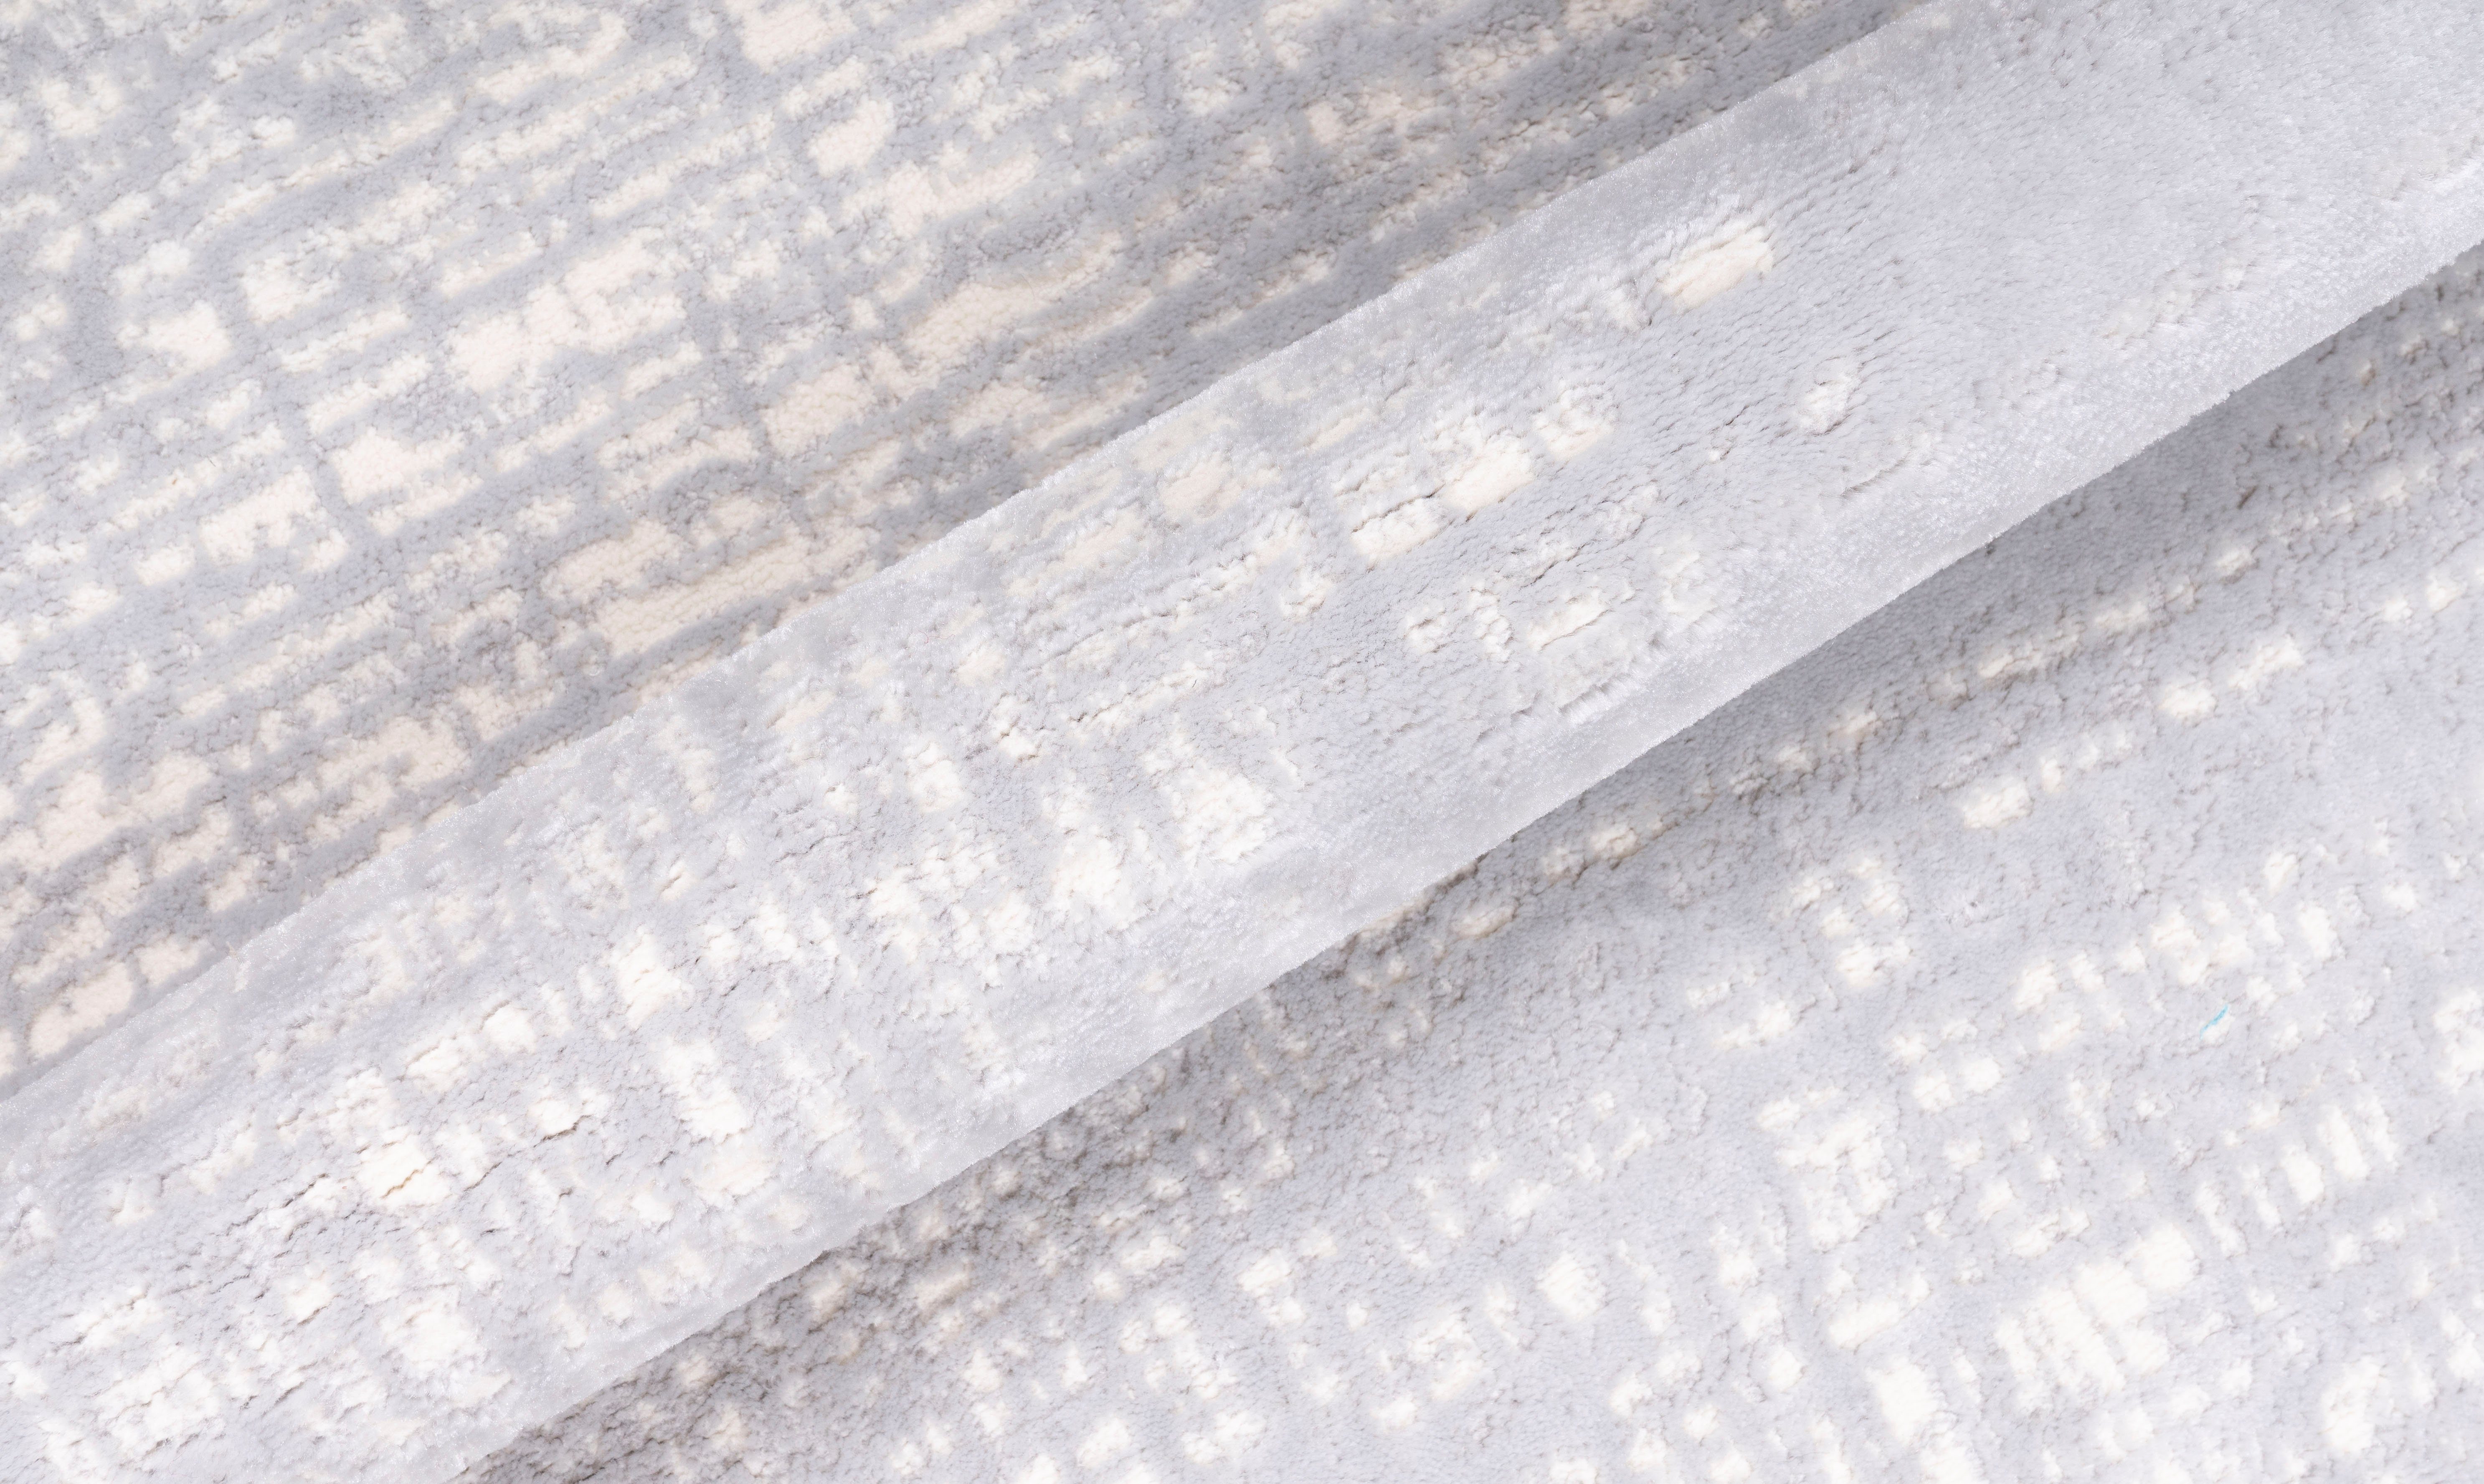 Teppich Ariano, Home affaire, rund, mm, 12 Höhe: Glanz, Schrumpf-Carving-Effekt grau Vintage, Hoch-Tief-Struktur, dezenter